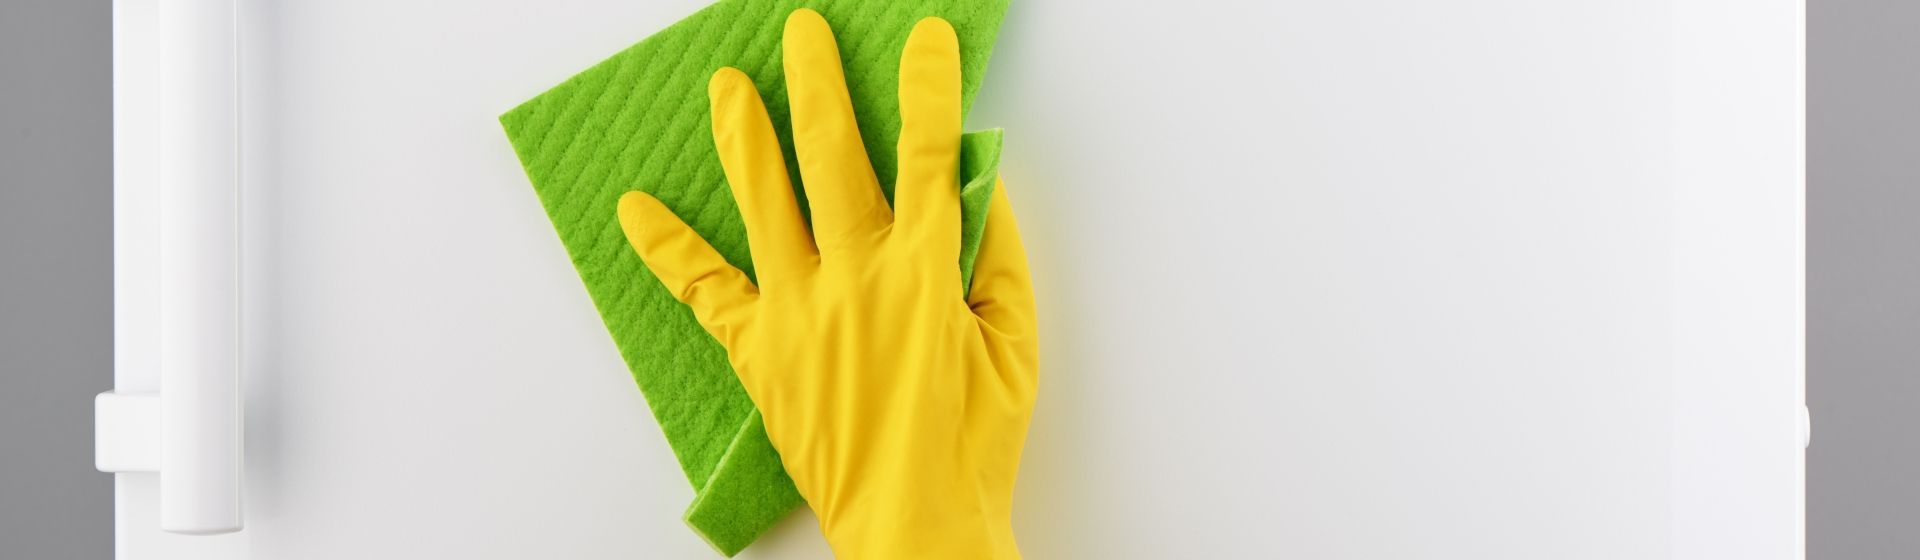 Pessoa usando luva amarela limpando uma geladeira branca com flanela verde